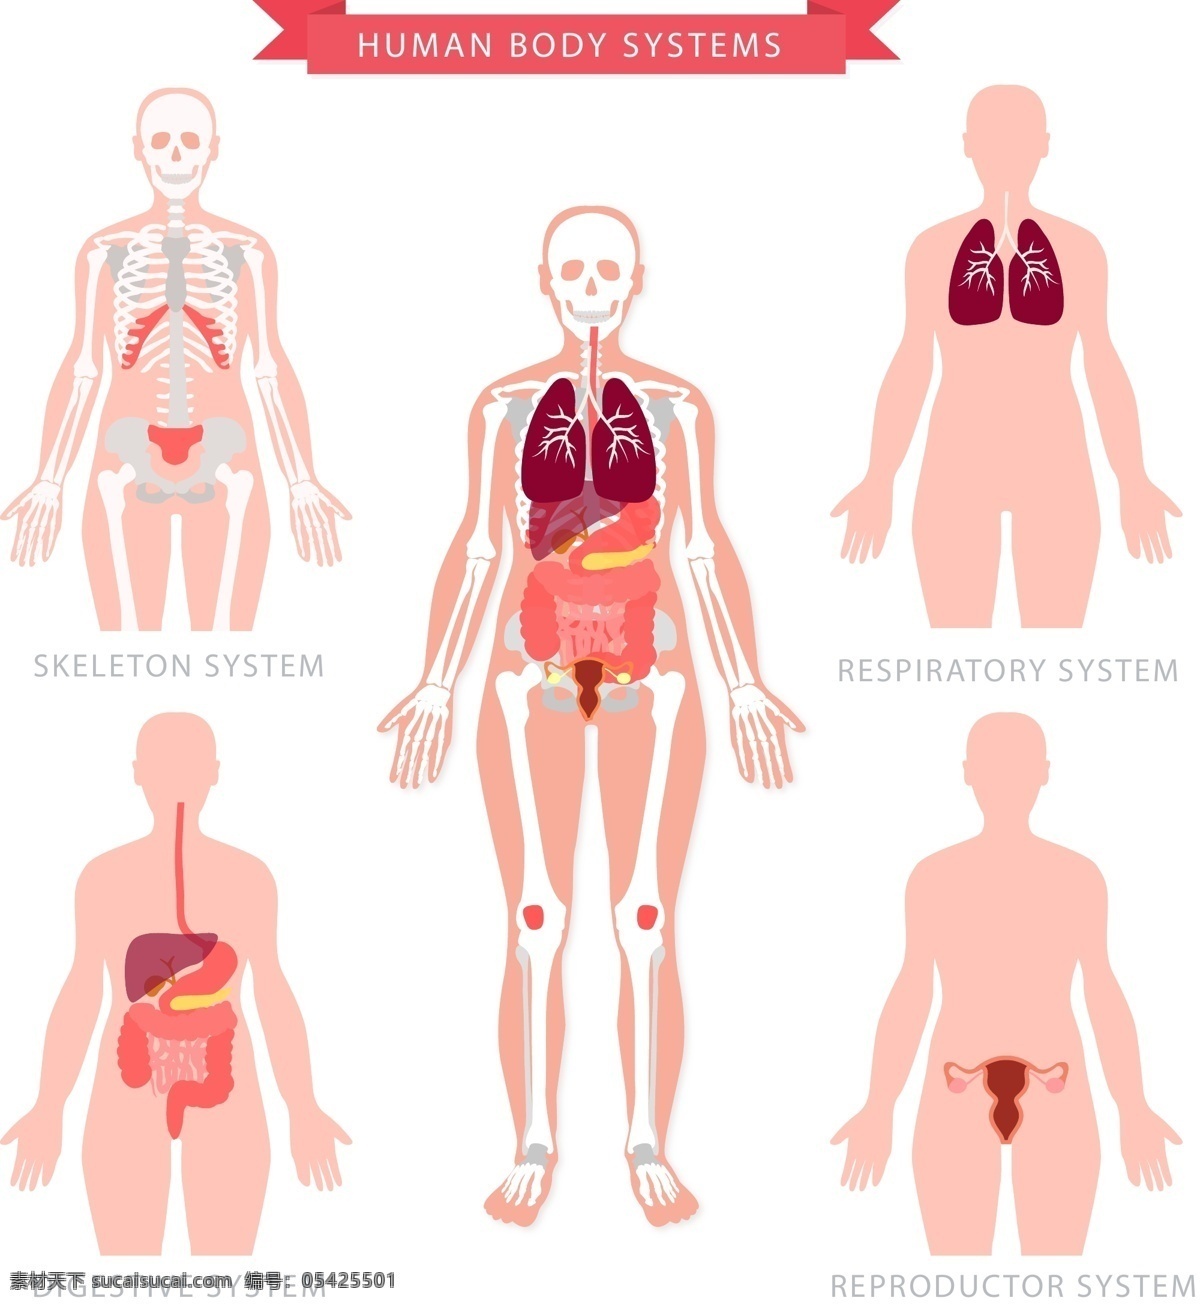 创意 人体 五大 系统 矢量 运动系统 呼吸系统 消化系统 泌尿系统 人体系统 骨骼 心脏 肺部 膀胱 肌肉 肠胃 现代科技 医疗护理